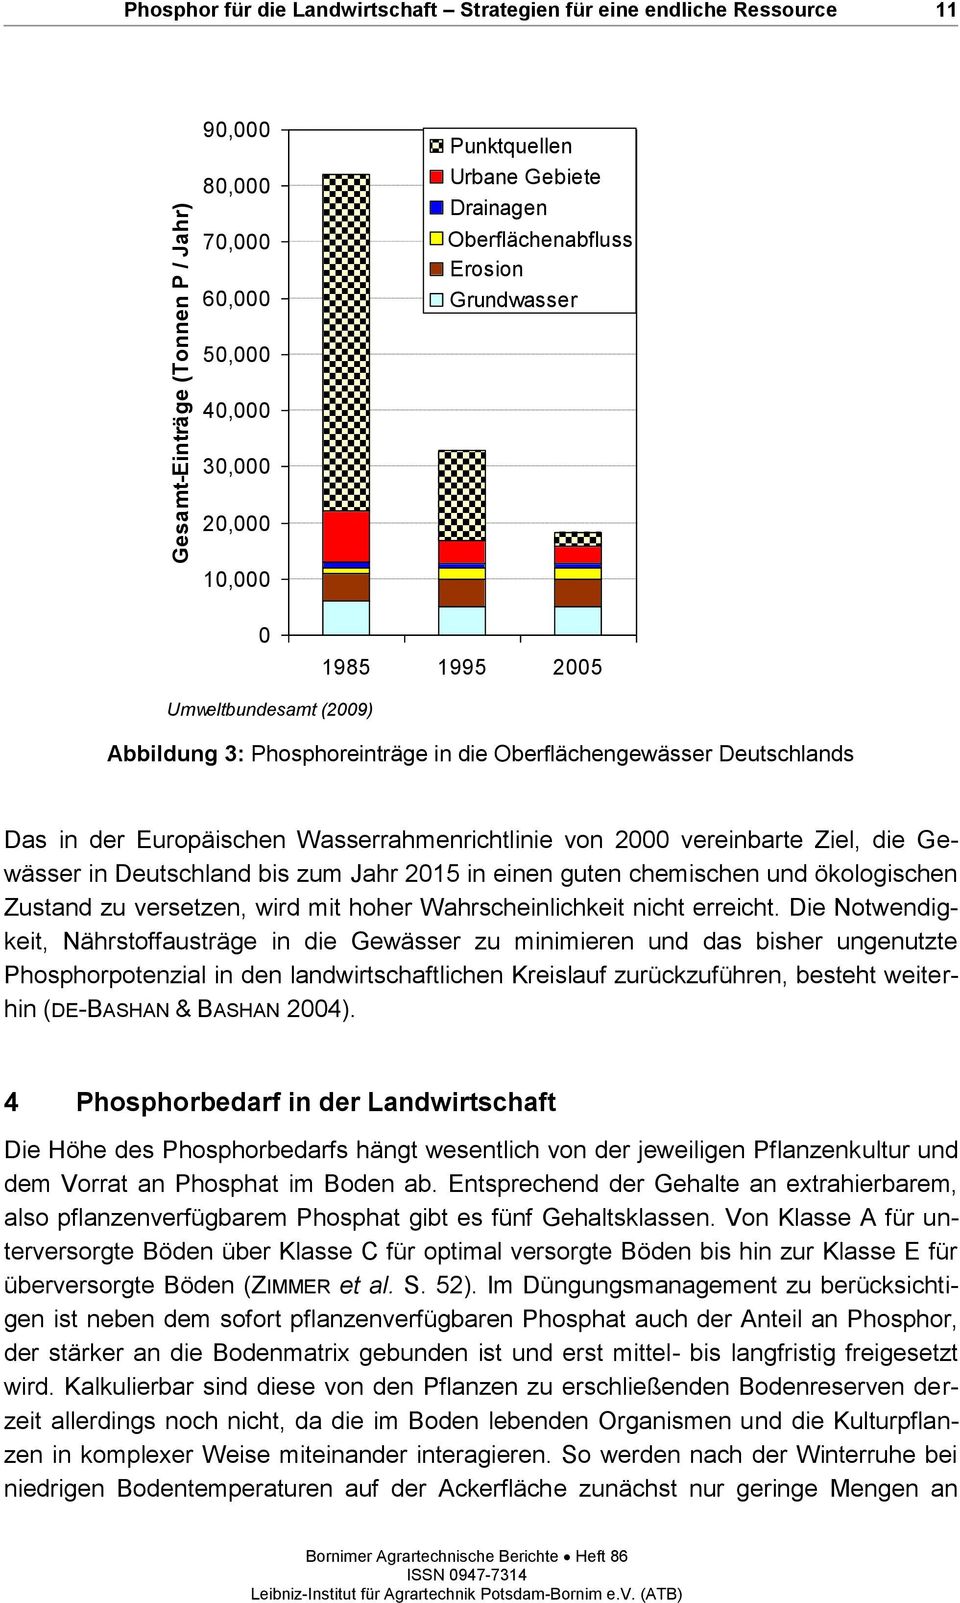 Europäischen Wasserrahmenrichtlinie von 2000 vereinbarte Ziel, die Gewässer in Deutschland bis zum Jahr 2015 in einen guten chemischen und ökologischen Zustand zu versetzen, wird mit hoher